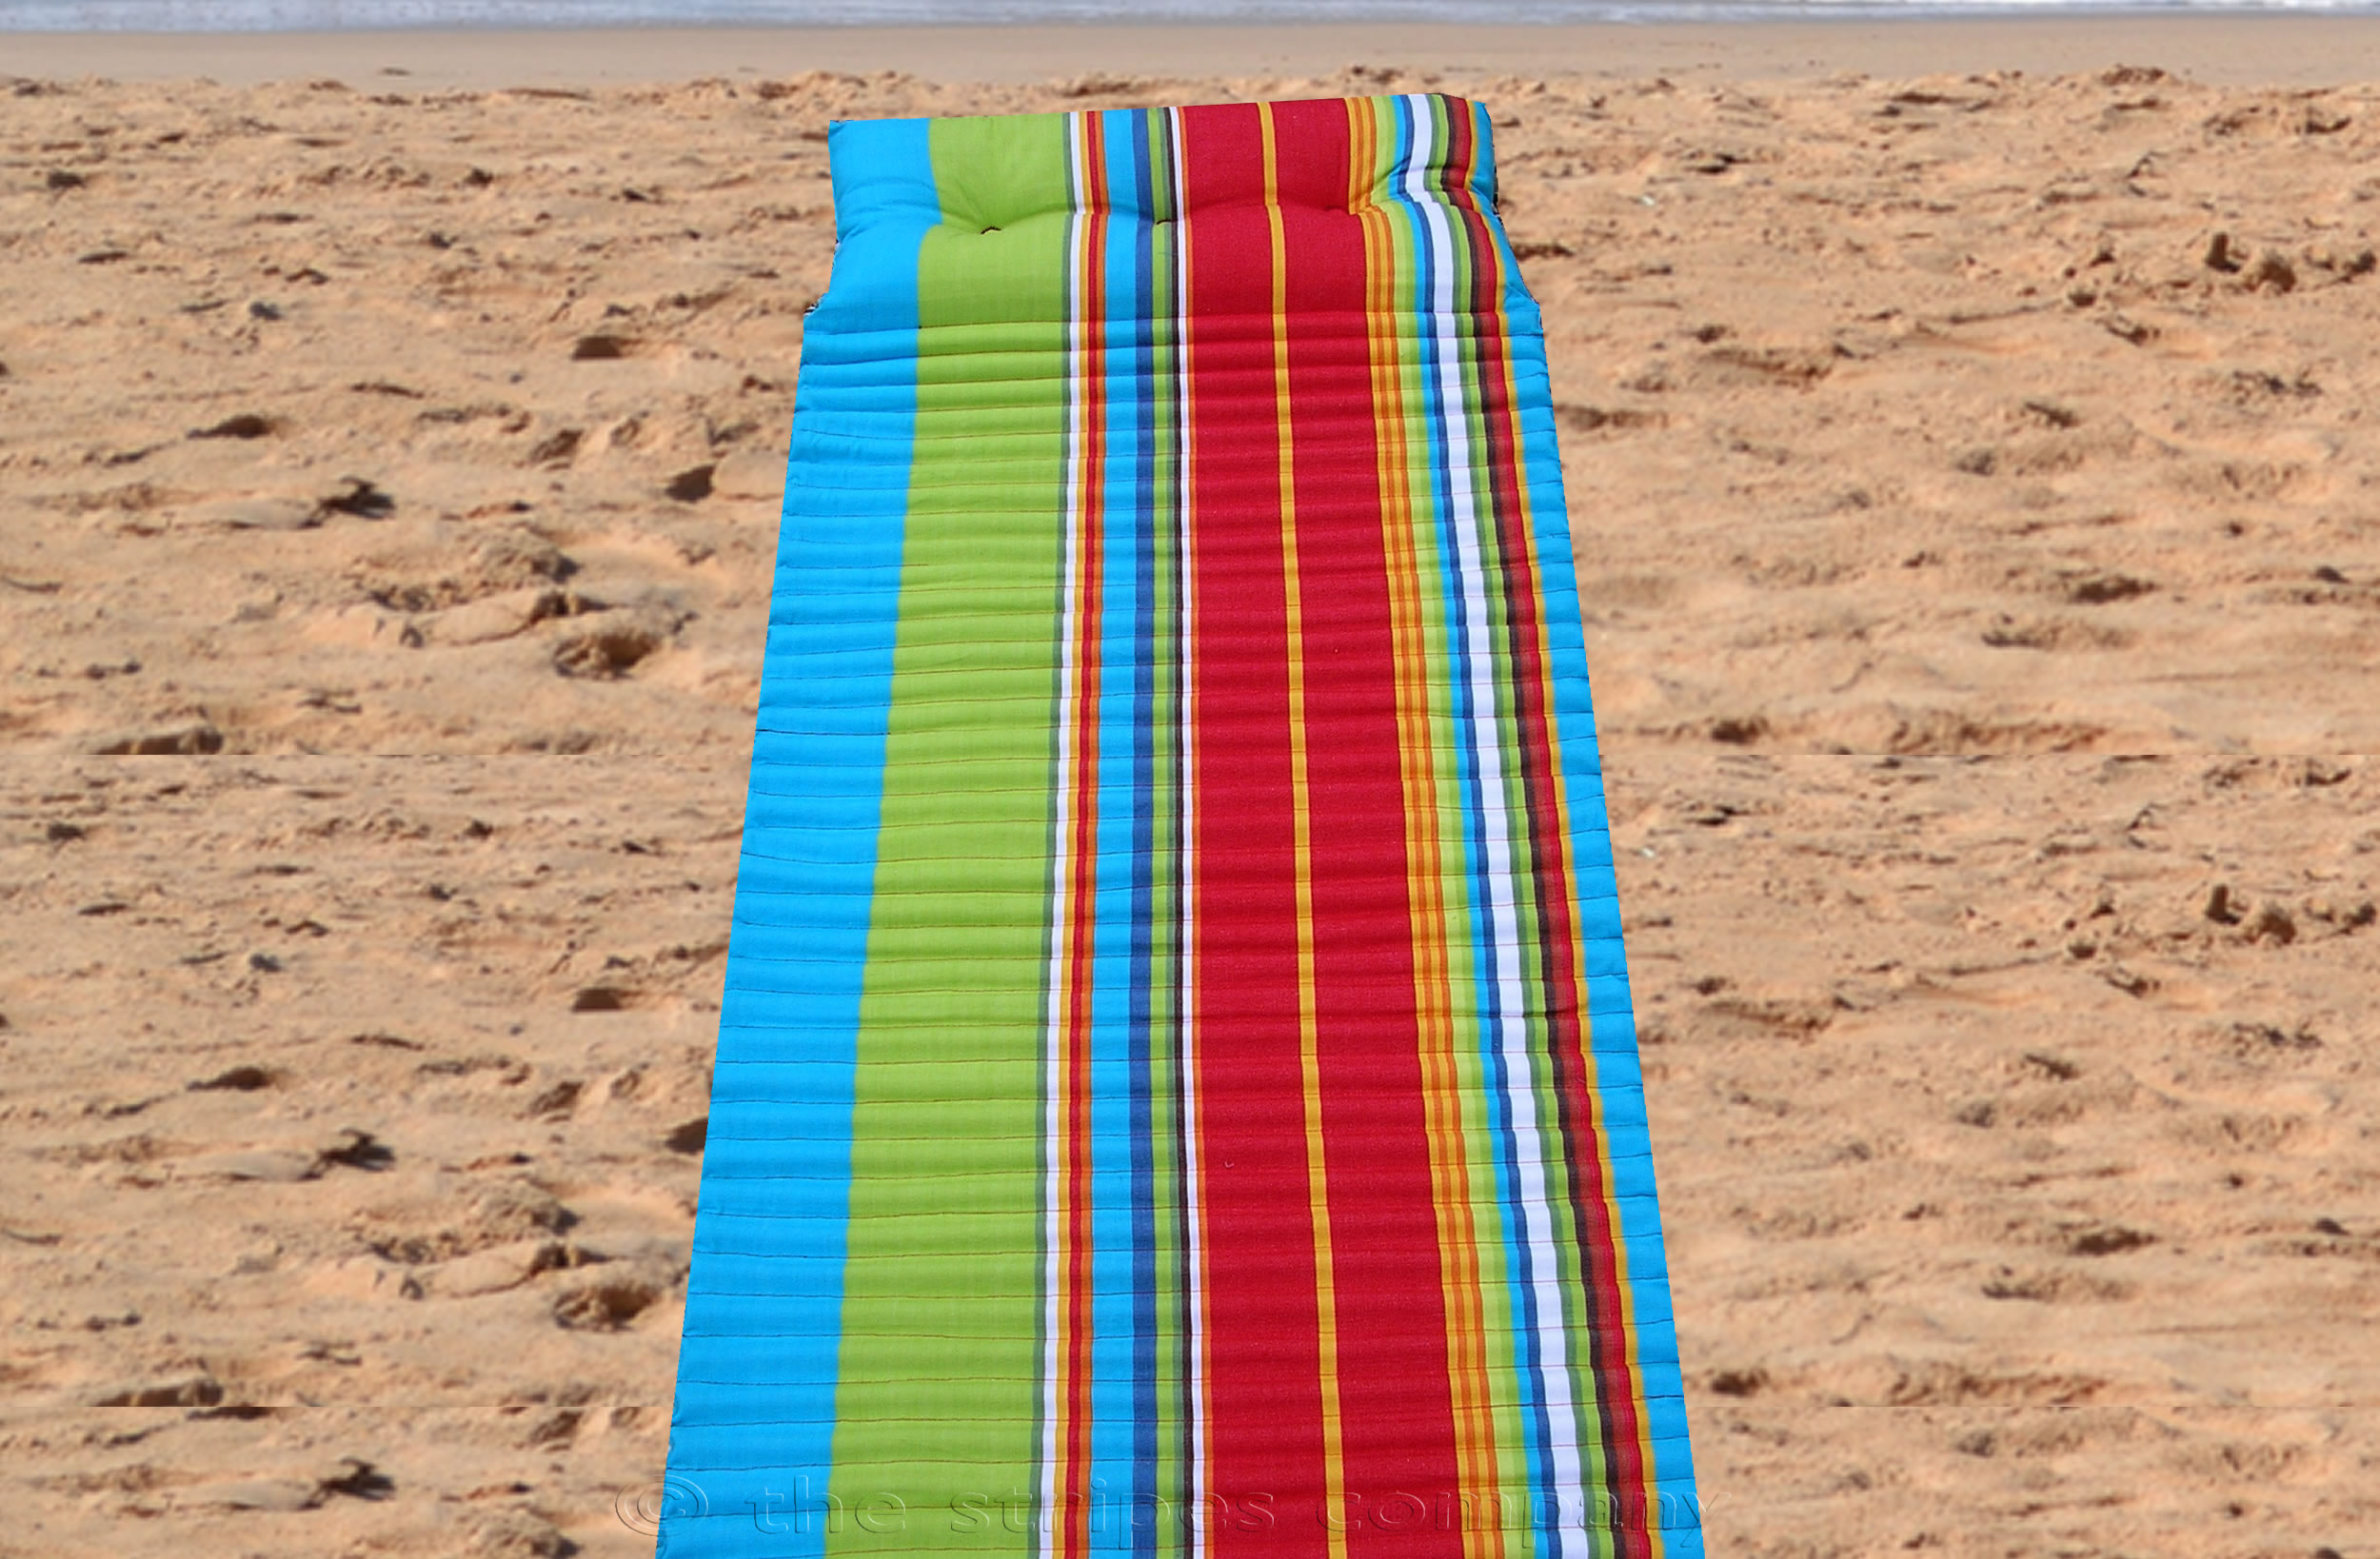 Striped Beach Mats | Roll Up Beach Mat | Beach Mattress with Pillow, Lime Green, Turquoise  Red  Stripes